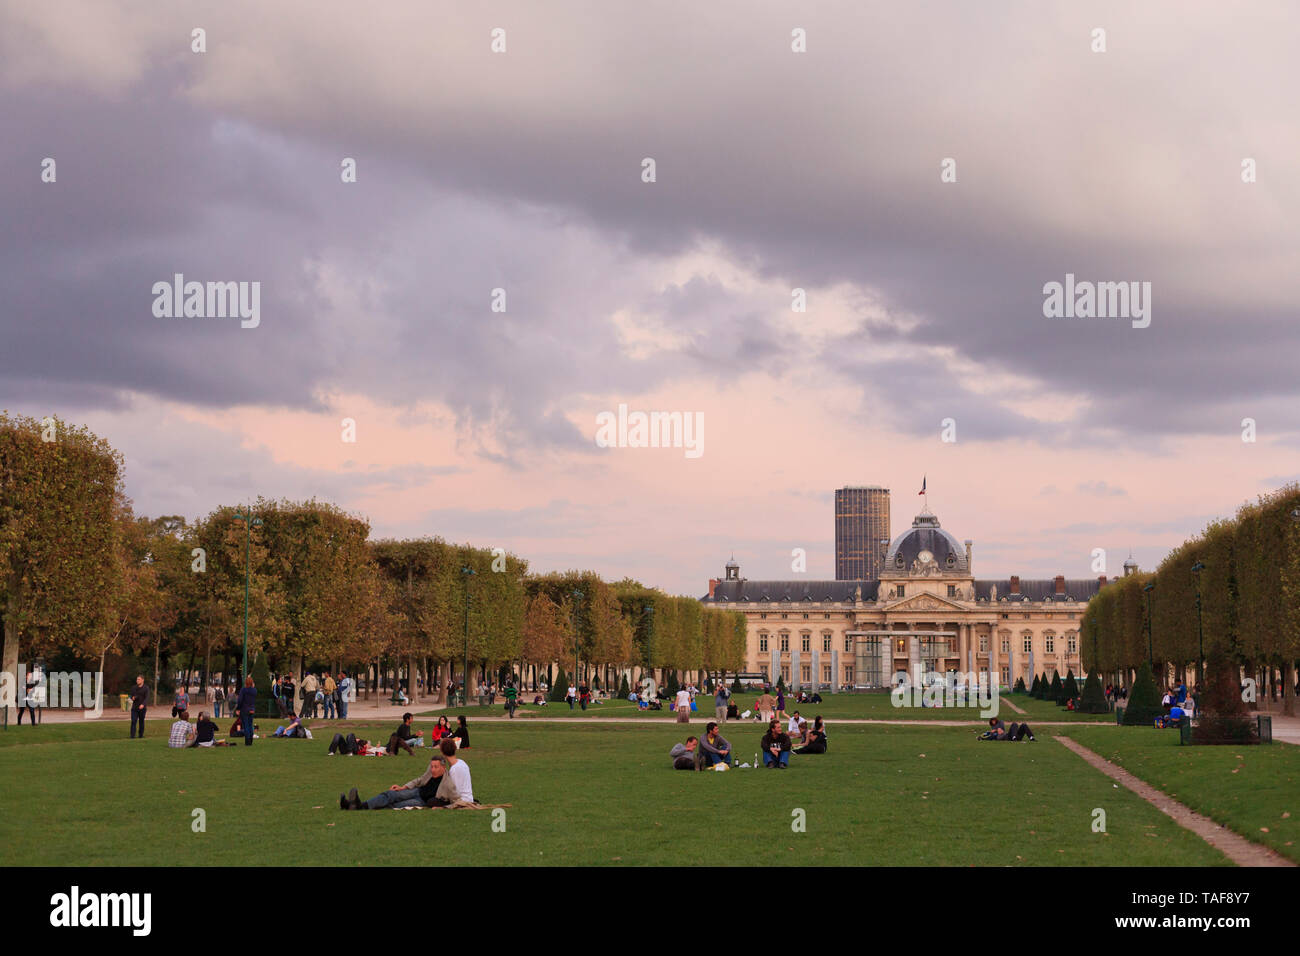 L'Ecole Militaire avec parisiens bénéficiant d'pelouse au parc, Paris, France Banque D'Images